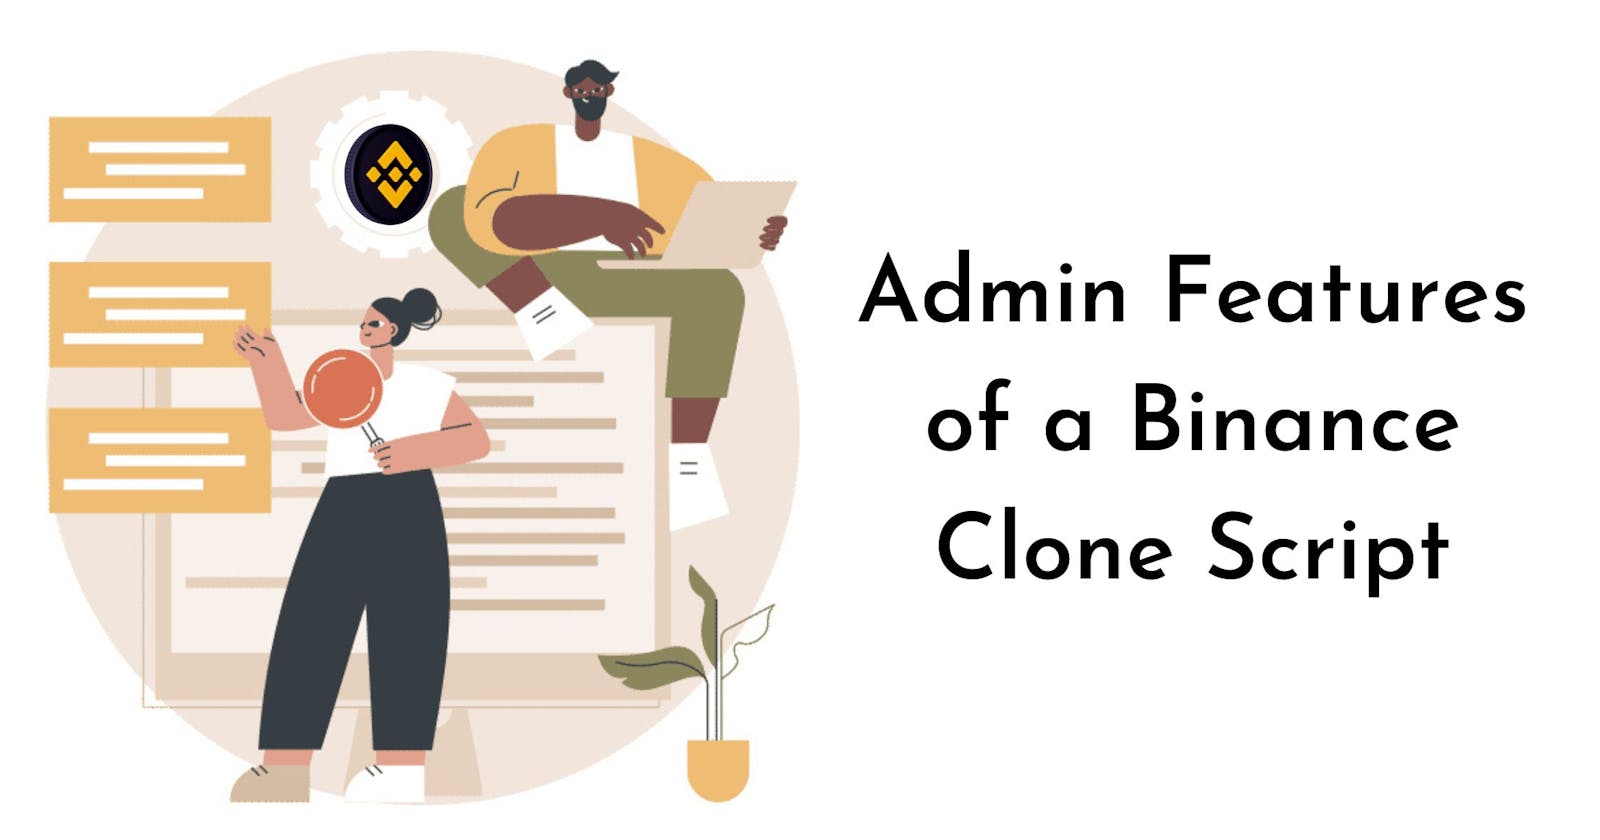 Top 6 Admin Features of a Binance Clone Script